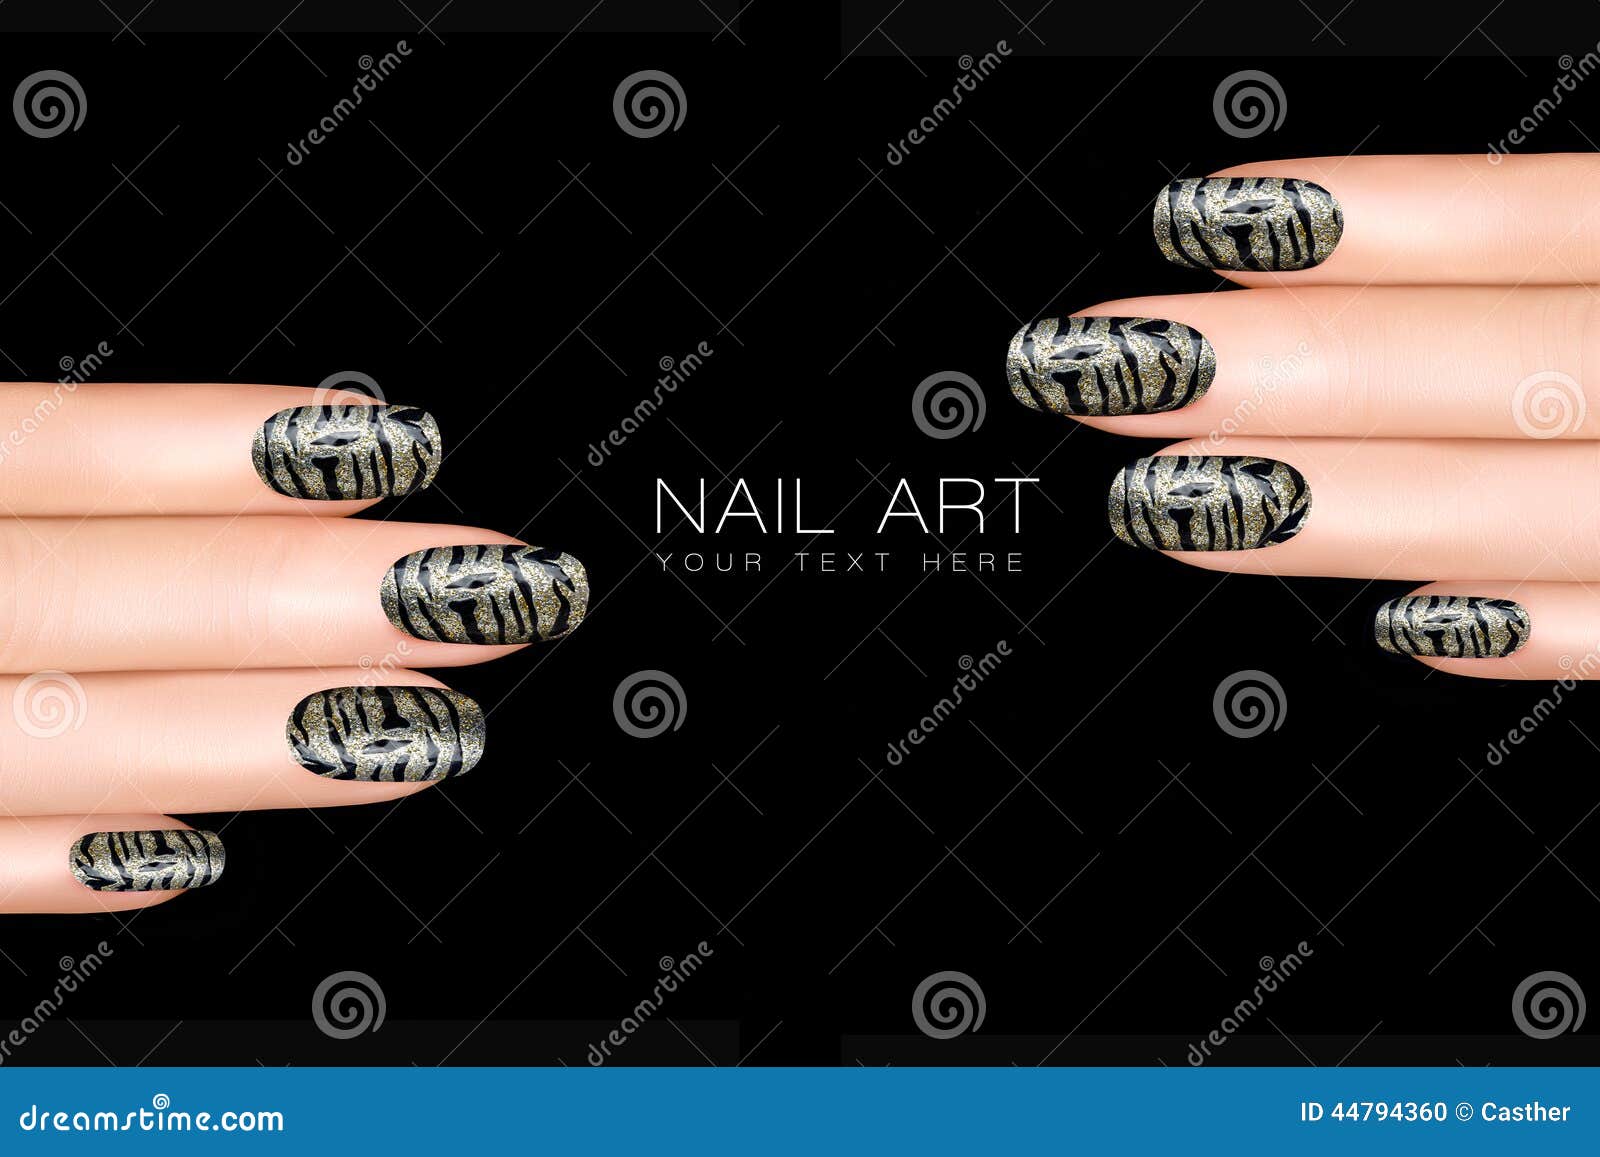 No Tool Nails Tutorial! 5 Animal Nail Art for Short Nails | Ami Nails -  YouTube